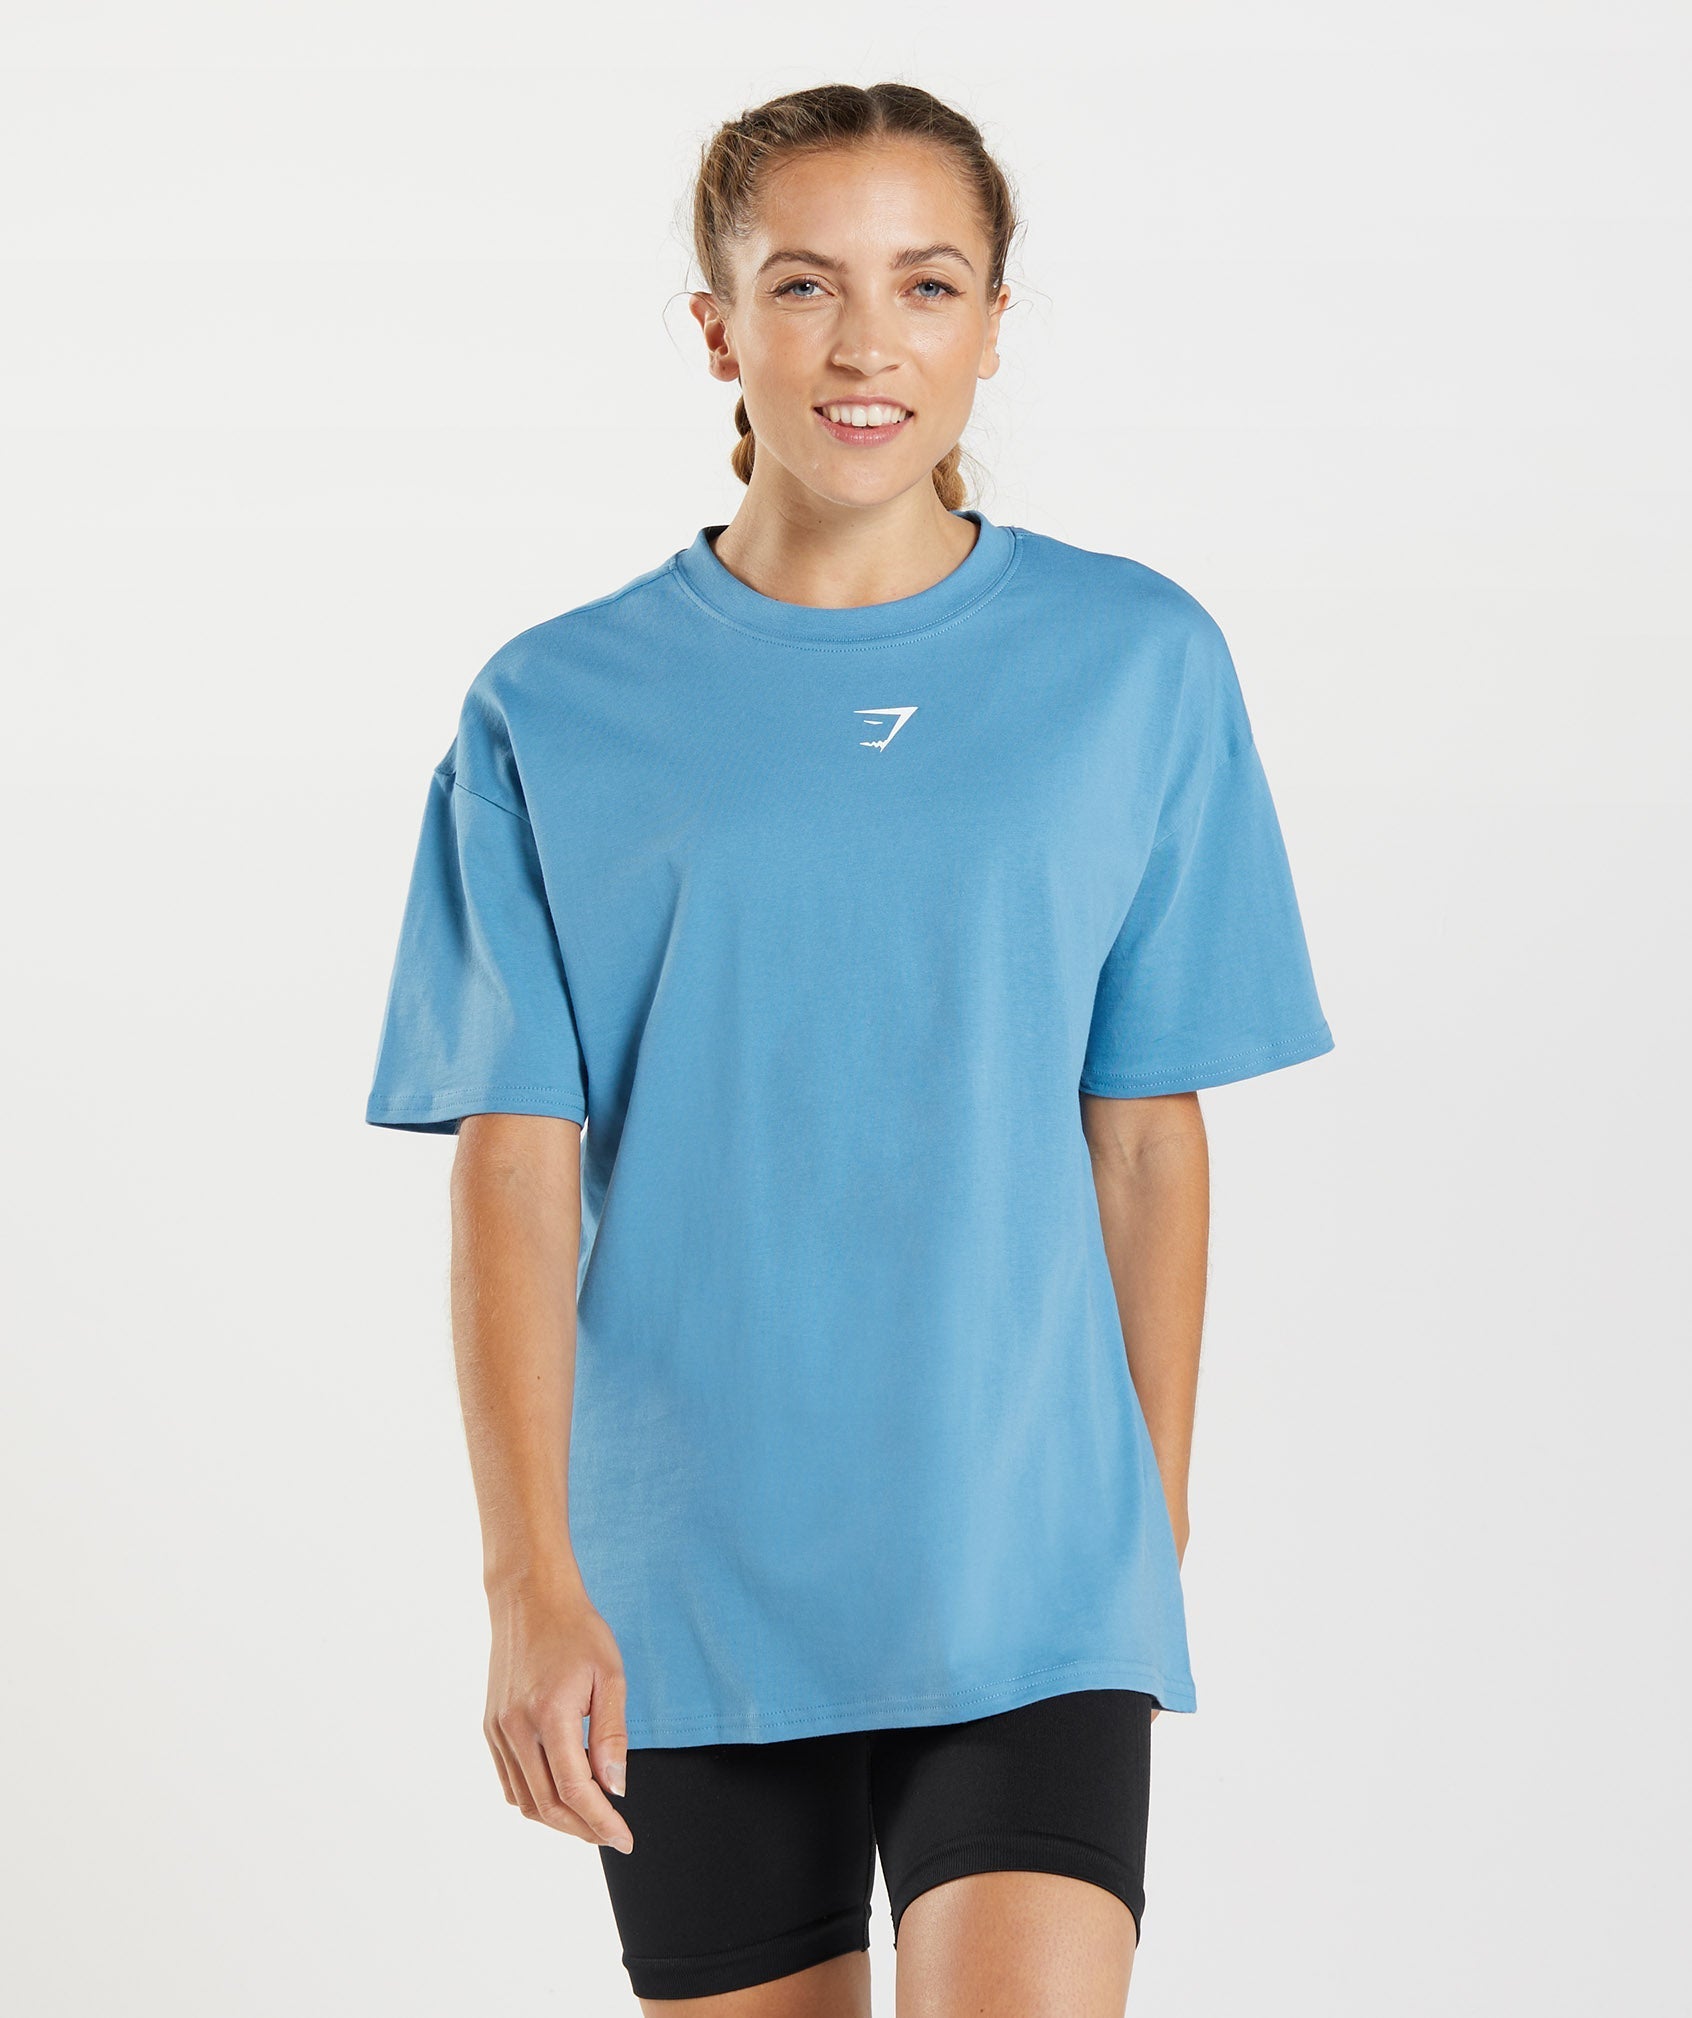 Gymshark Fraction Oversized T-Shirt - Coastal Blue